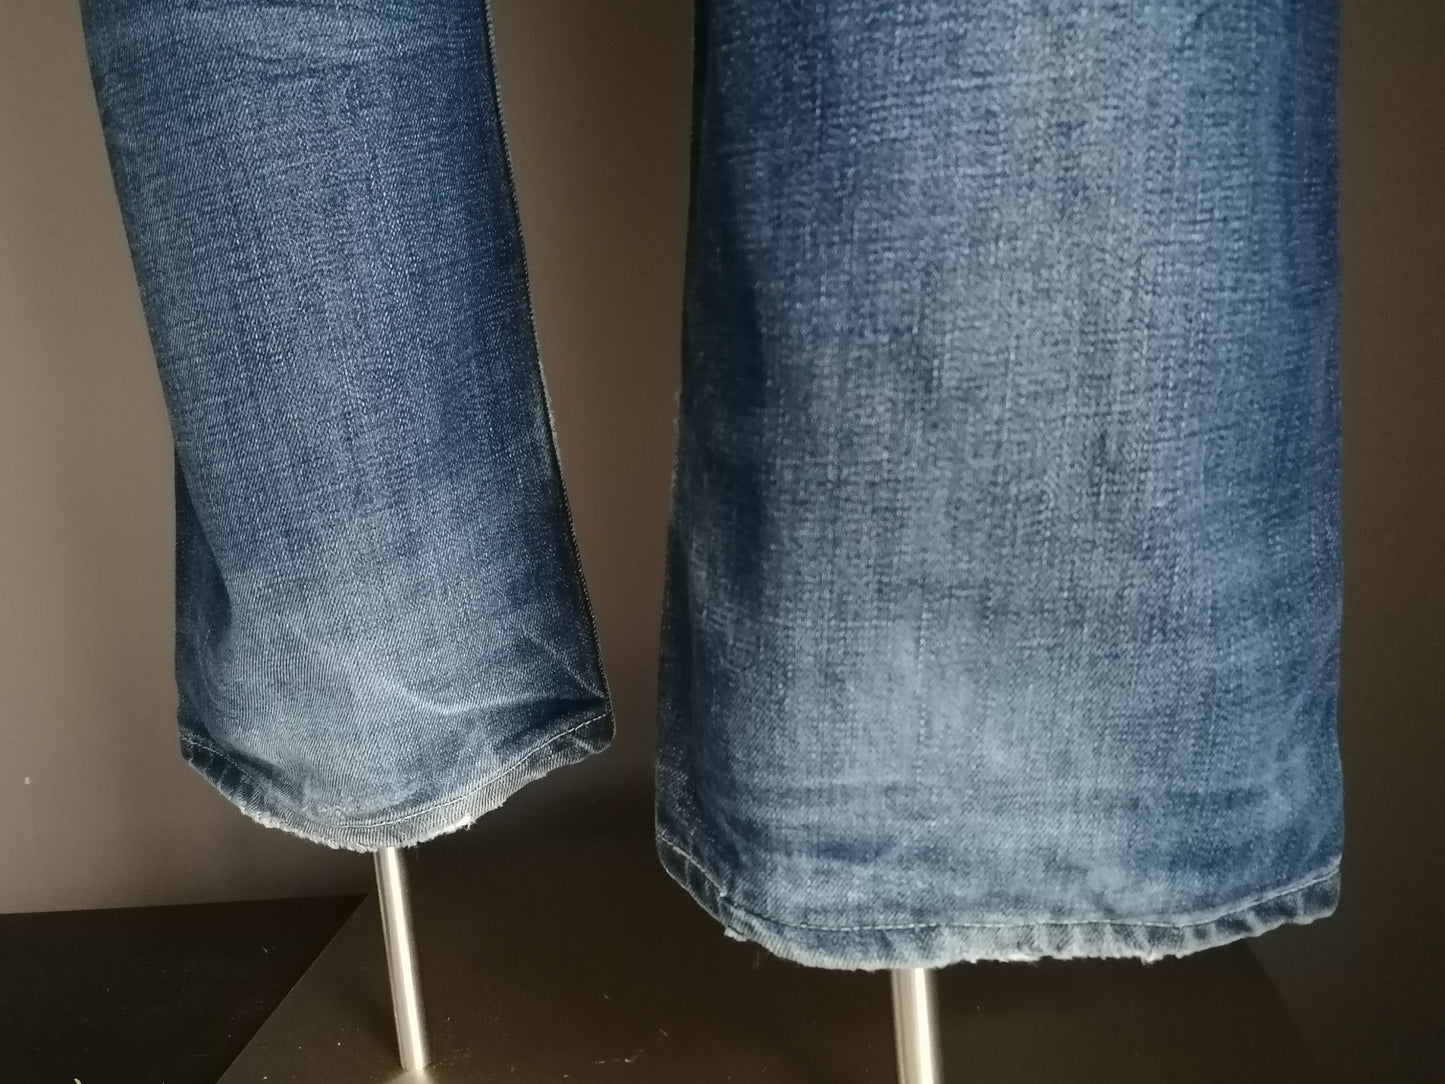 Jeans de Levi. Couleur bleue. W34 - L28.